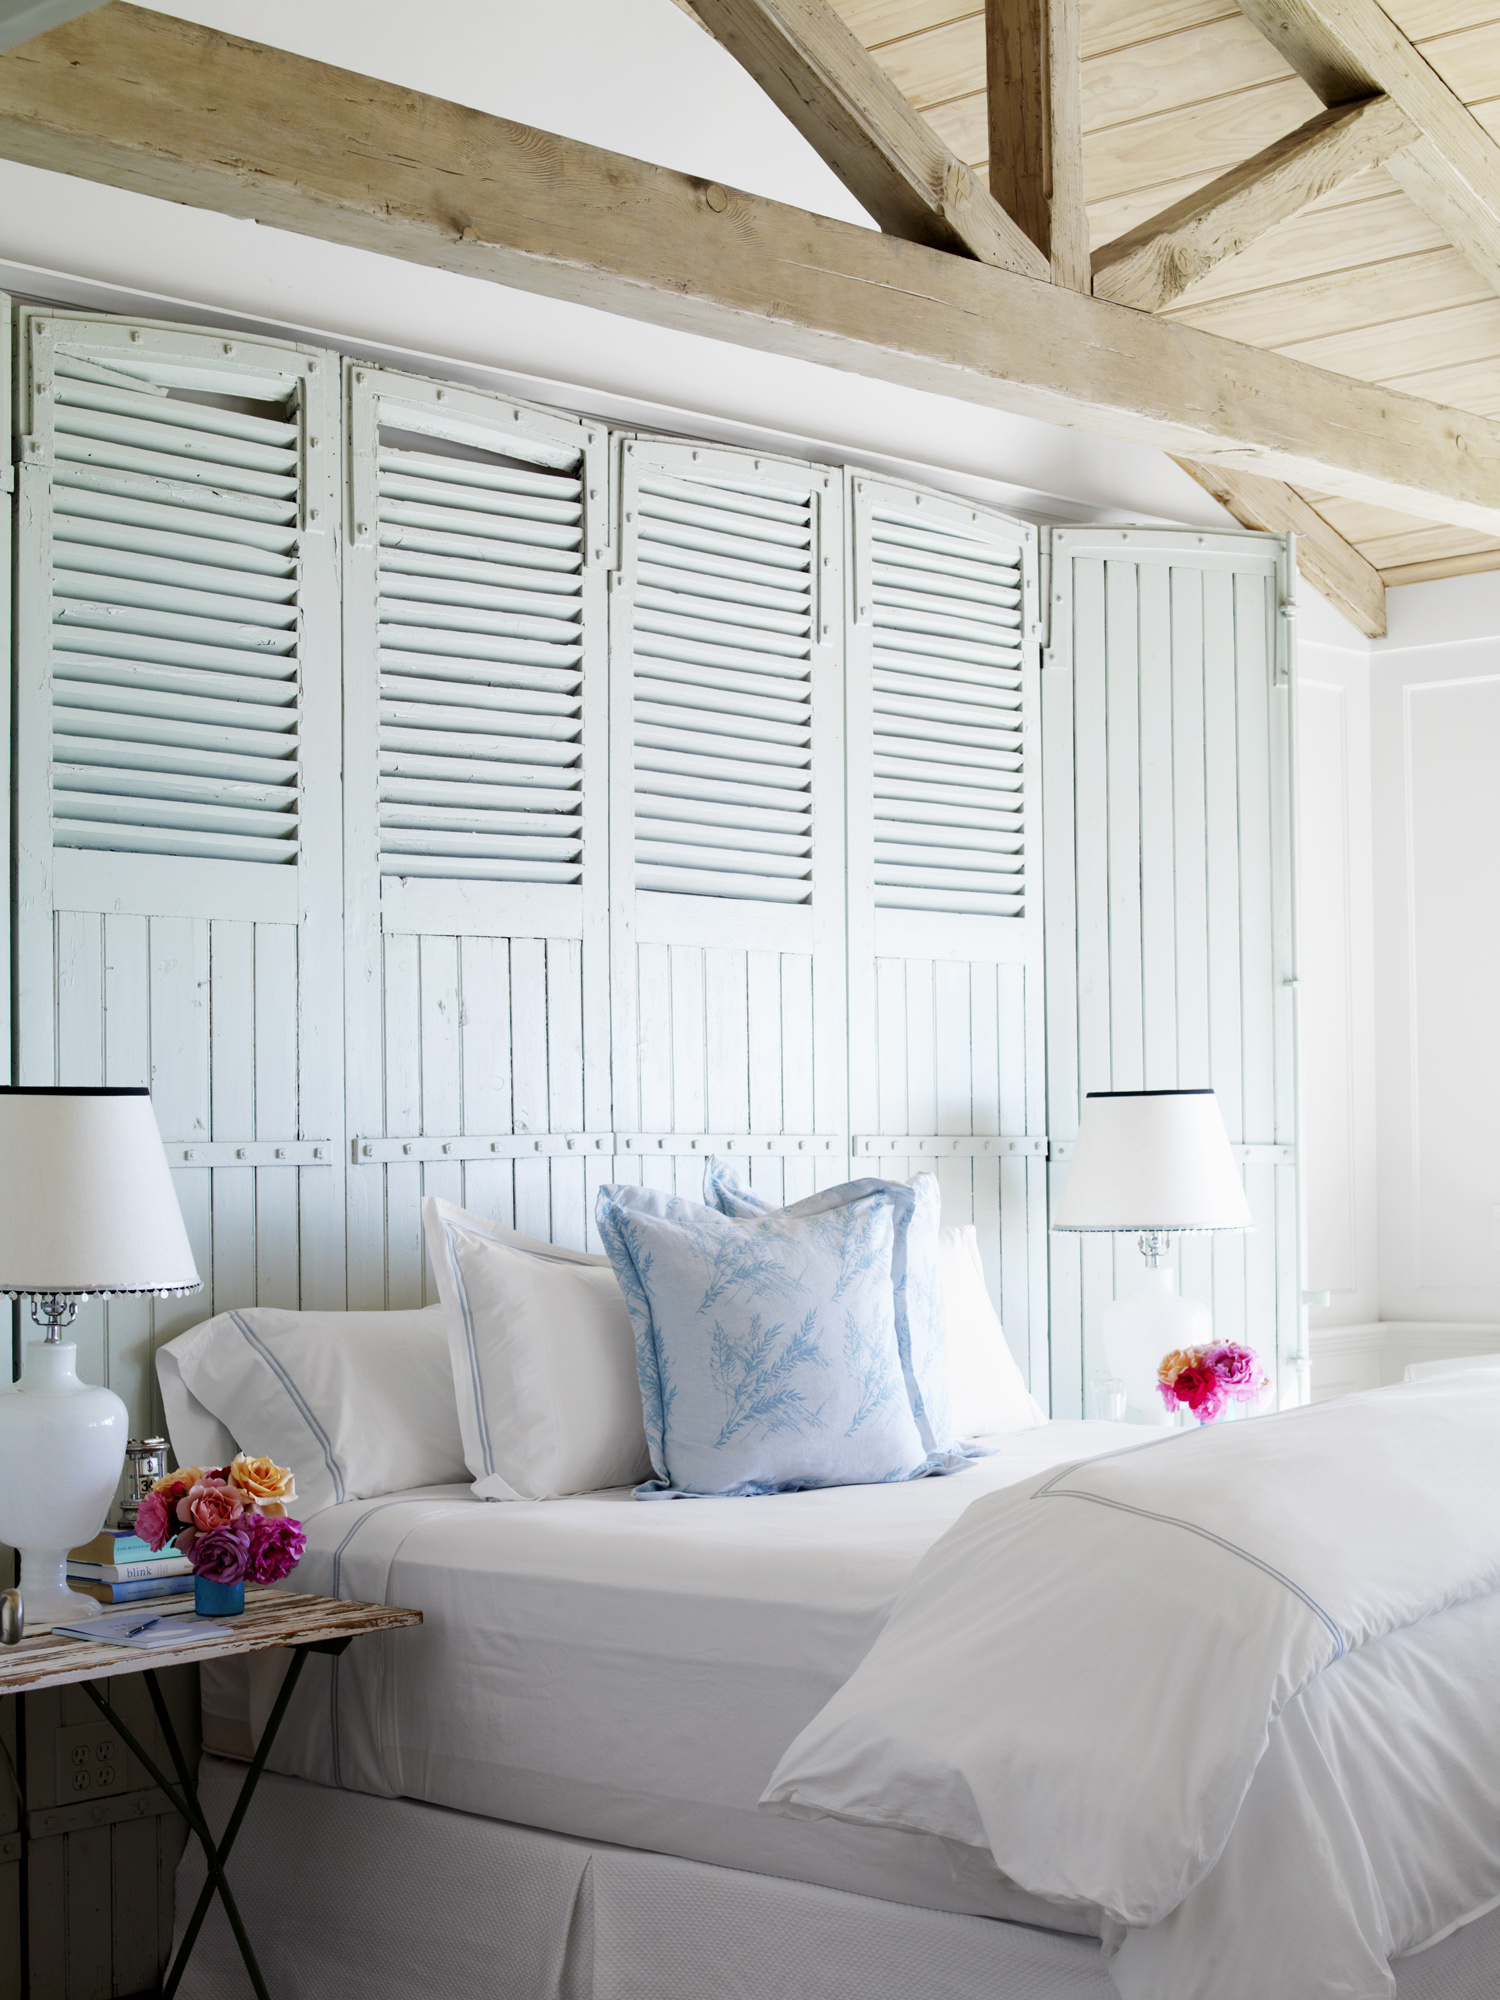 Phòng ngủ nằm trong ngôi nhà xinh đẹp tại vùng ven biển ở California (Mỹ). Nhà thiết kế nội thất Carolyn Aspley-Miller đã trang trí bức tường ở khu vực đầu giường bằng những cánh cửa chớp cũ kỹ, phủ lên một lớp sơn trắng cho mùa Hè dịu mát.